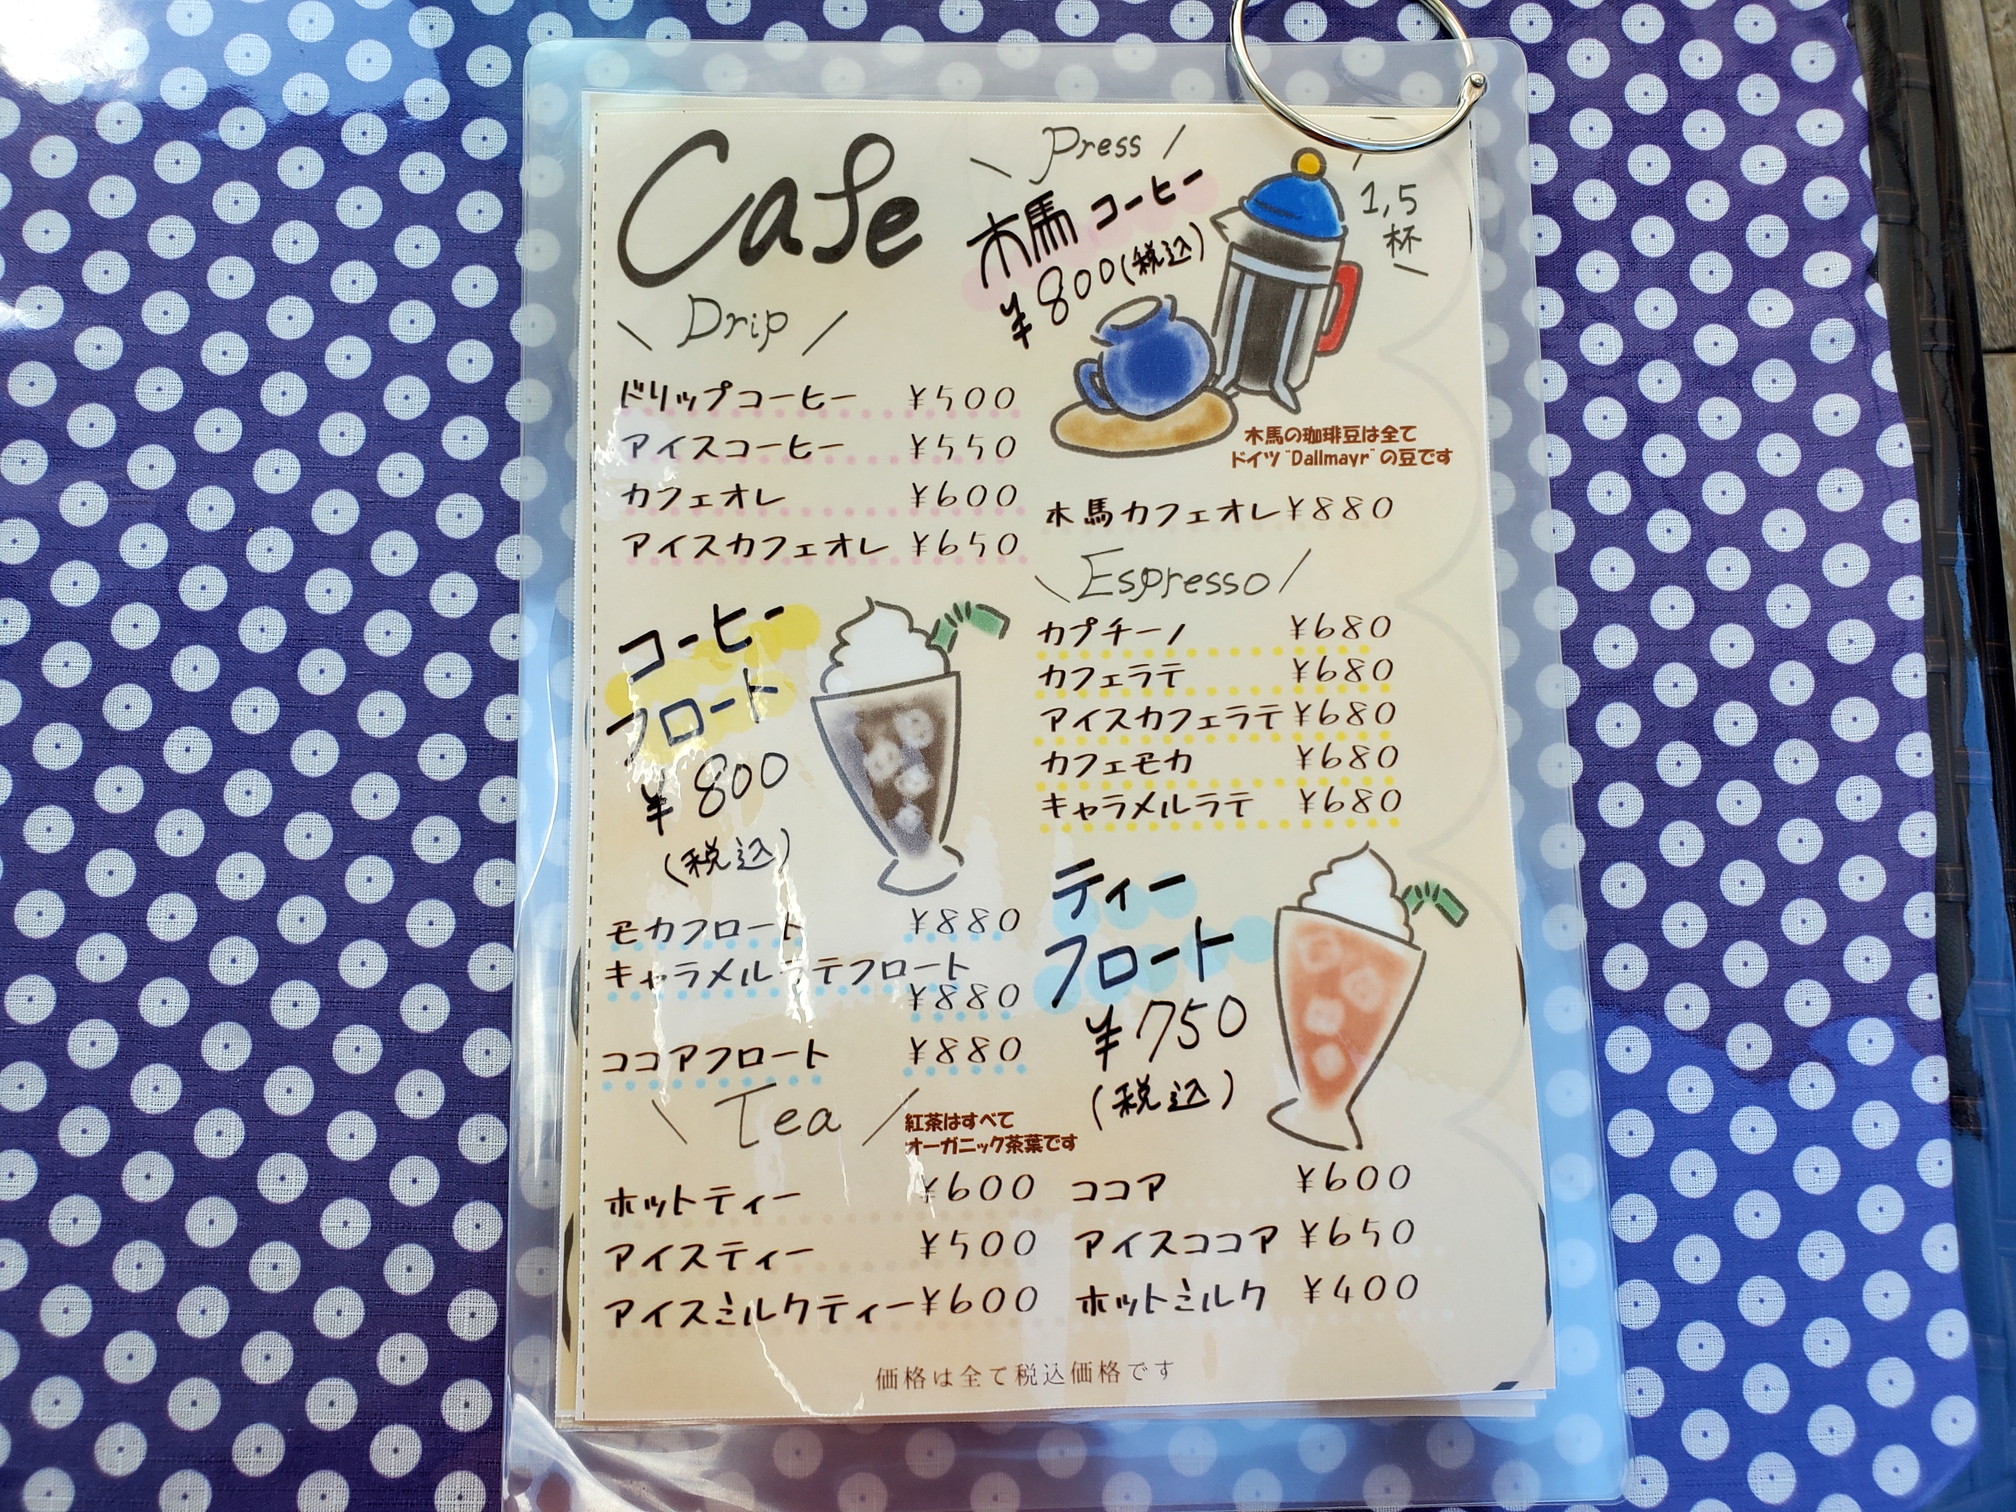 木馬CafeRestaurant